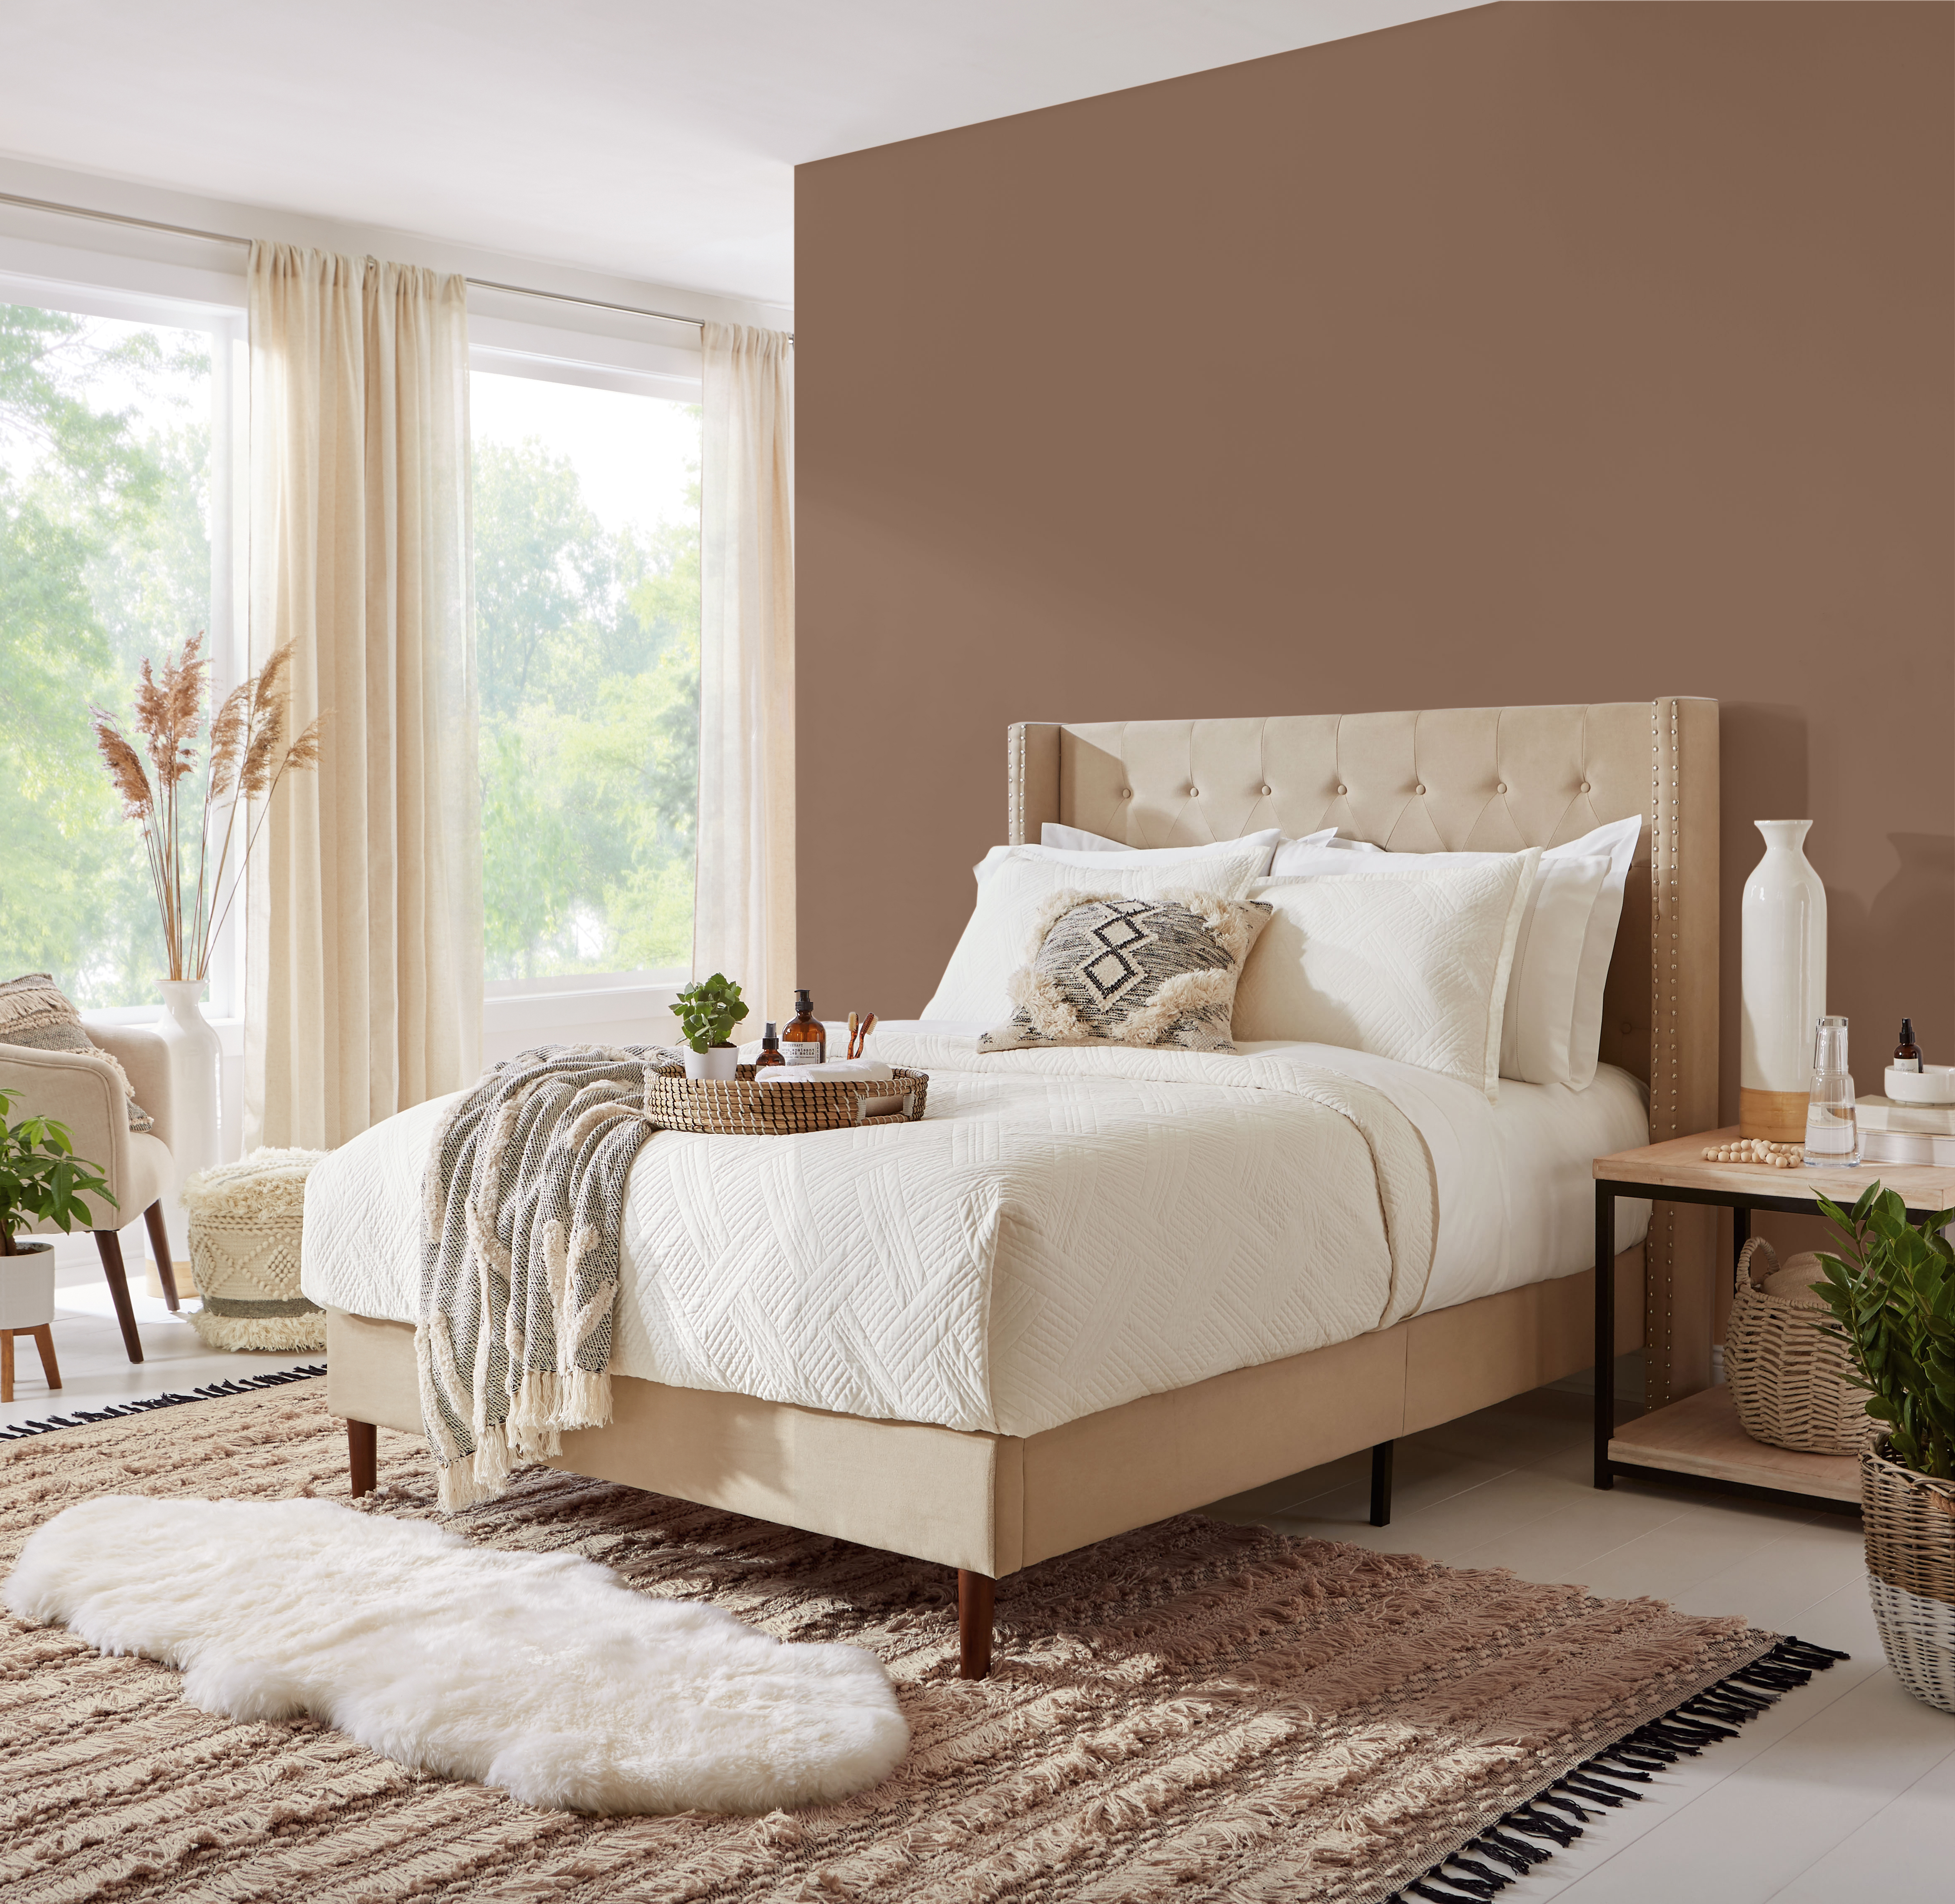 Une chambre contemporaine/boho avec de grandes fenêtres. On y retrouve un lit confortable avec une literie blanche toute simple. Le mur est peint en un brun foncé appelé Mustang sauvage.